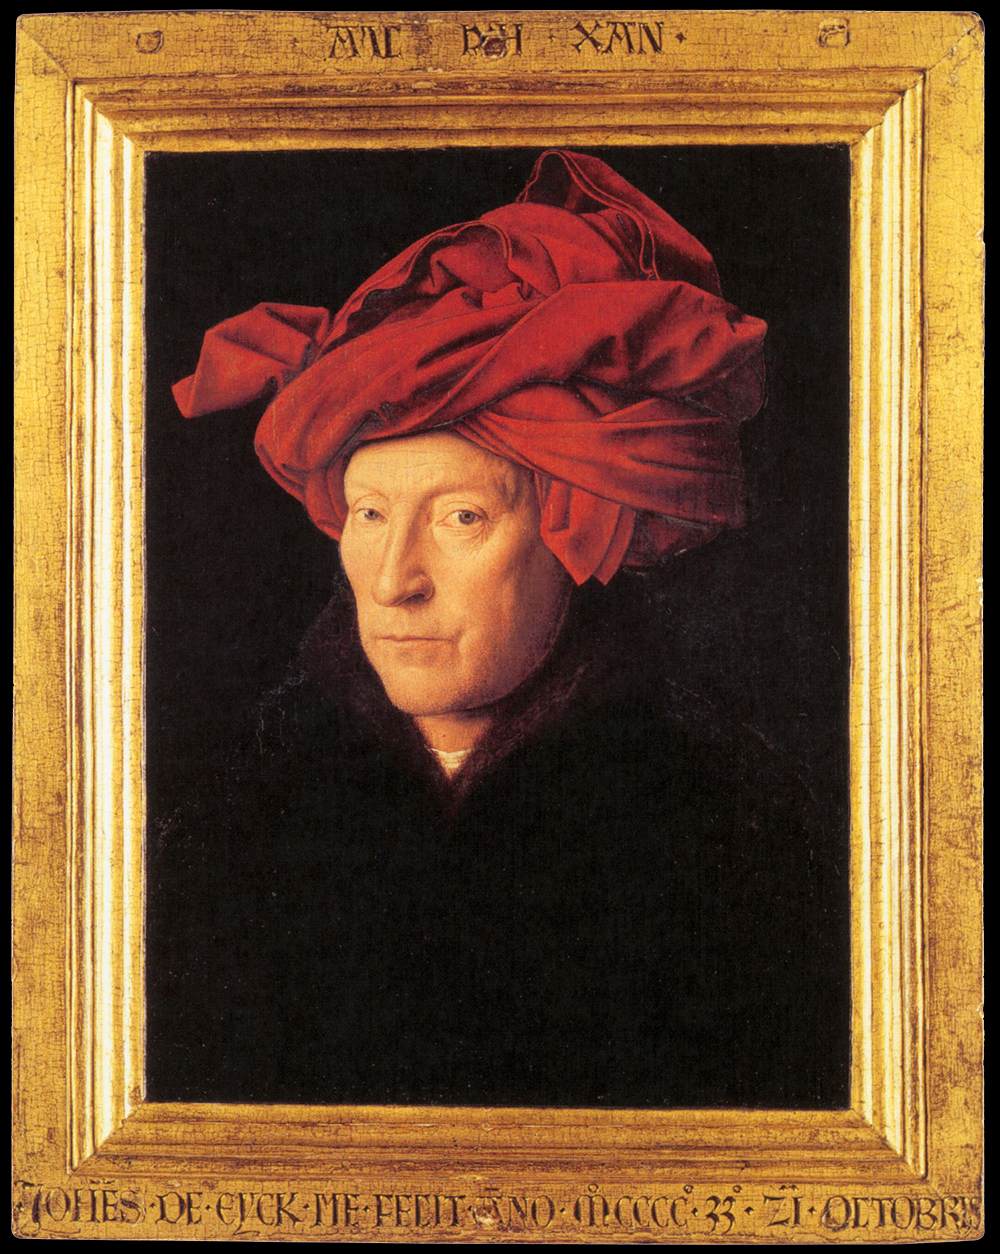 Artistas narrados: Jan van Eyck